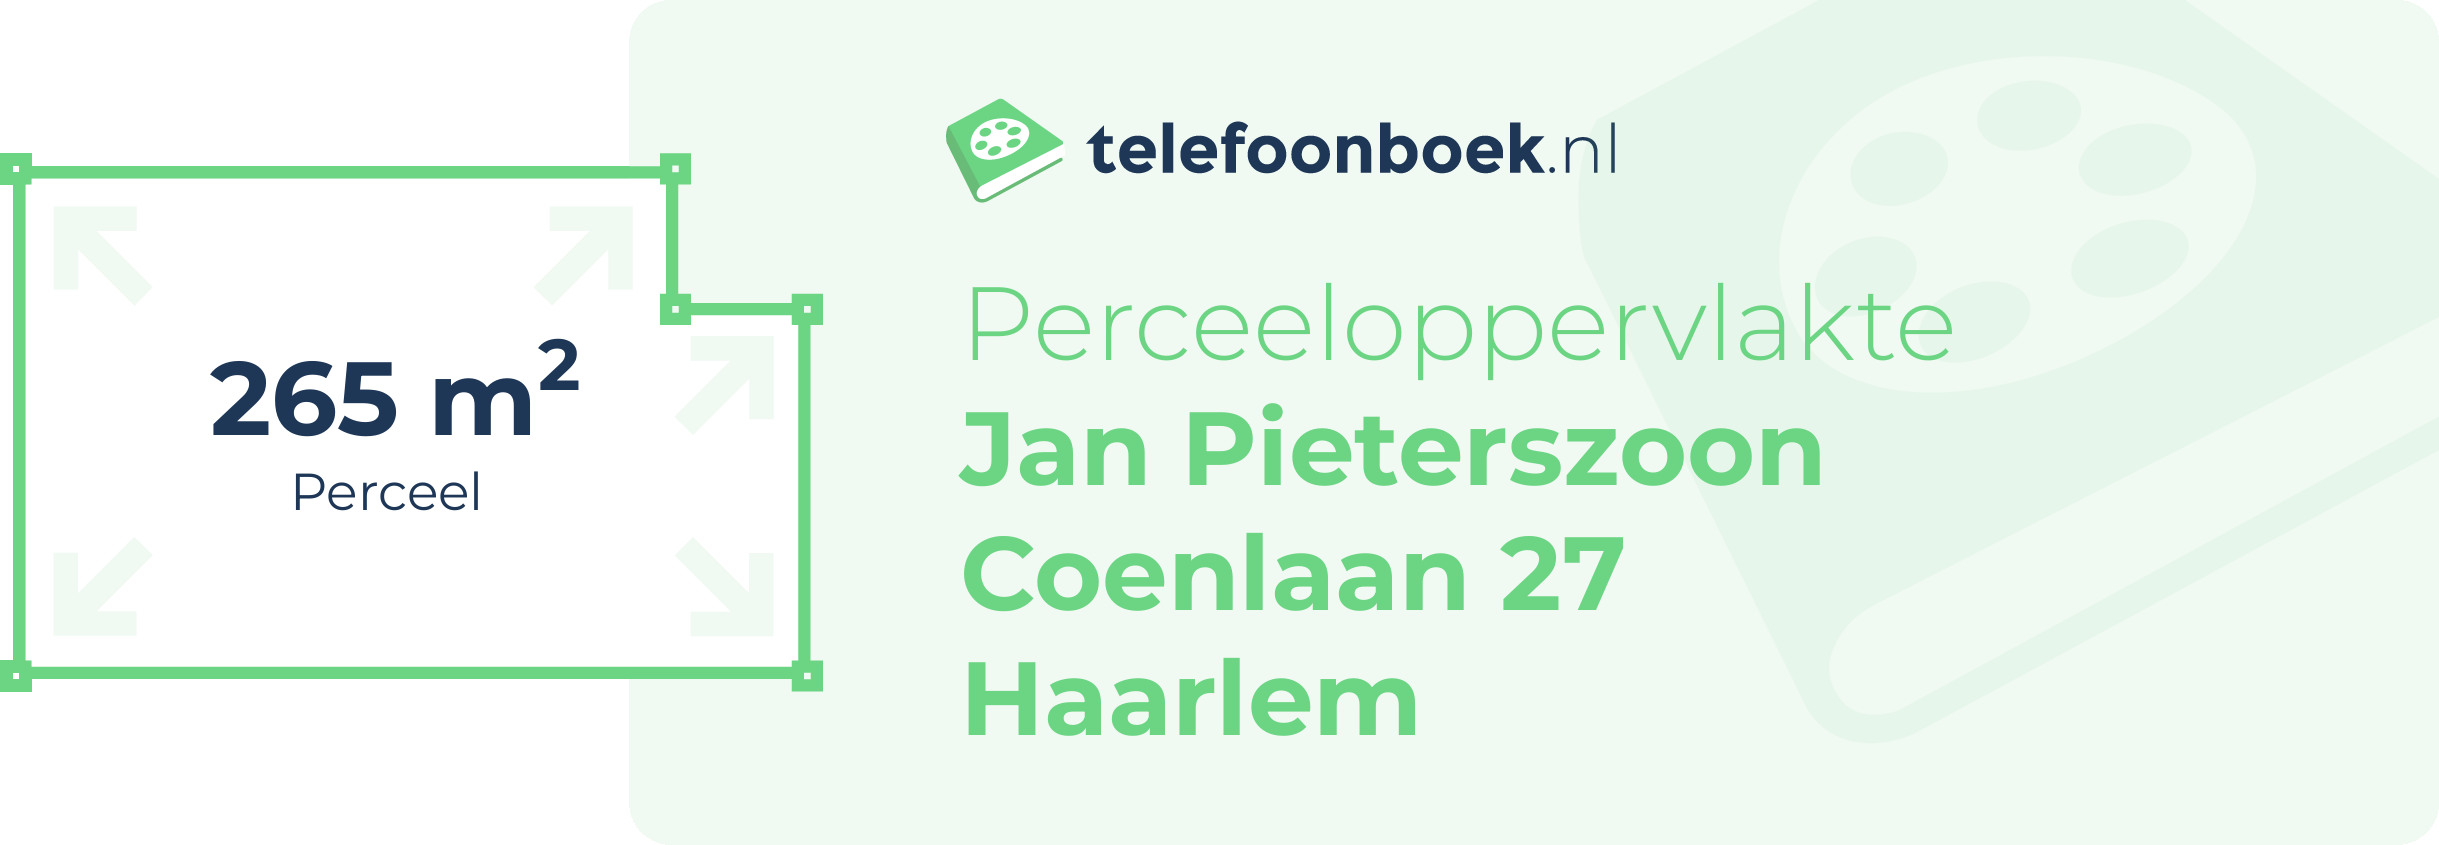 Perceeloppervlakte Jan Pieterszoon Coenlaan 27 Haarlem